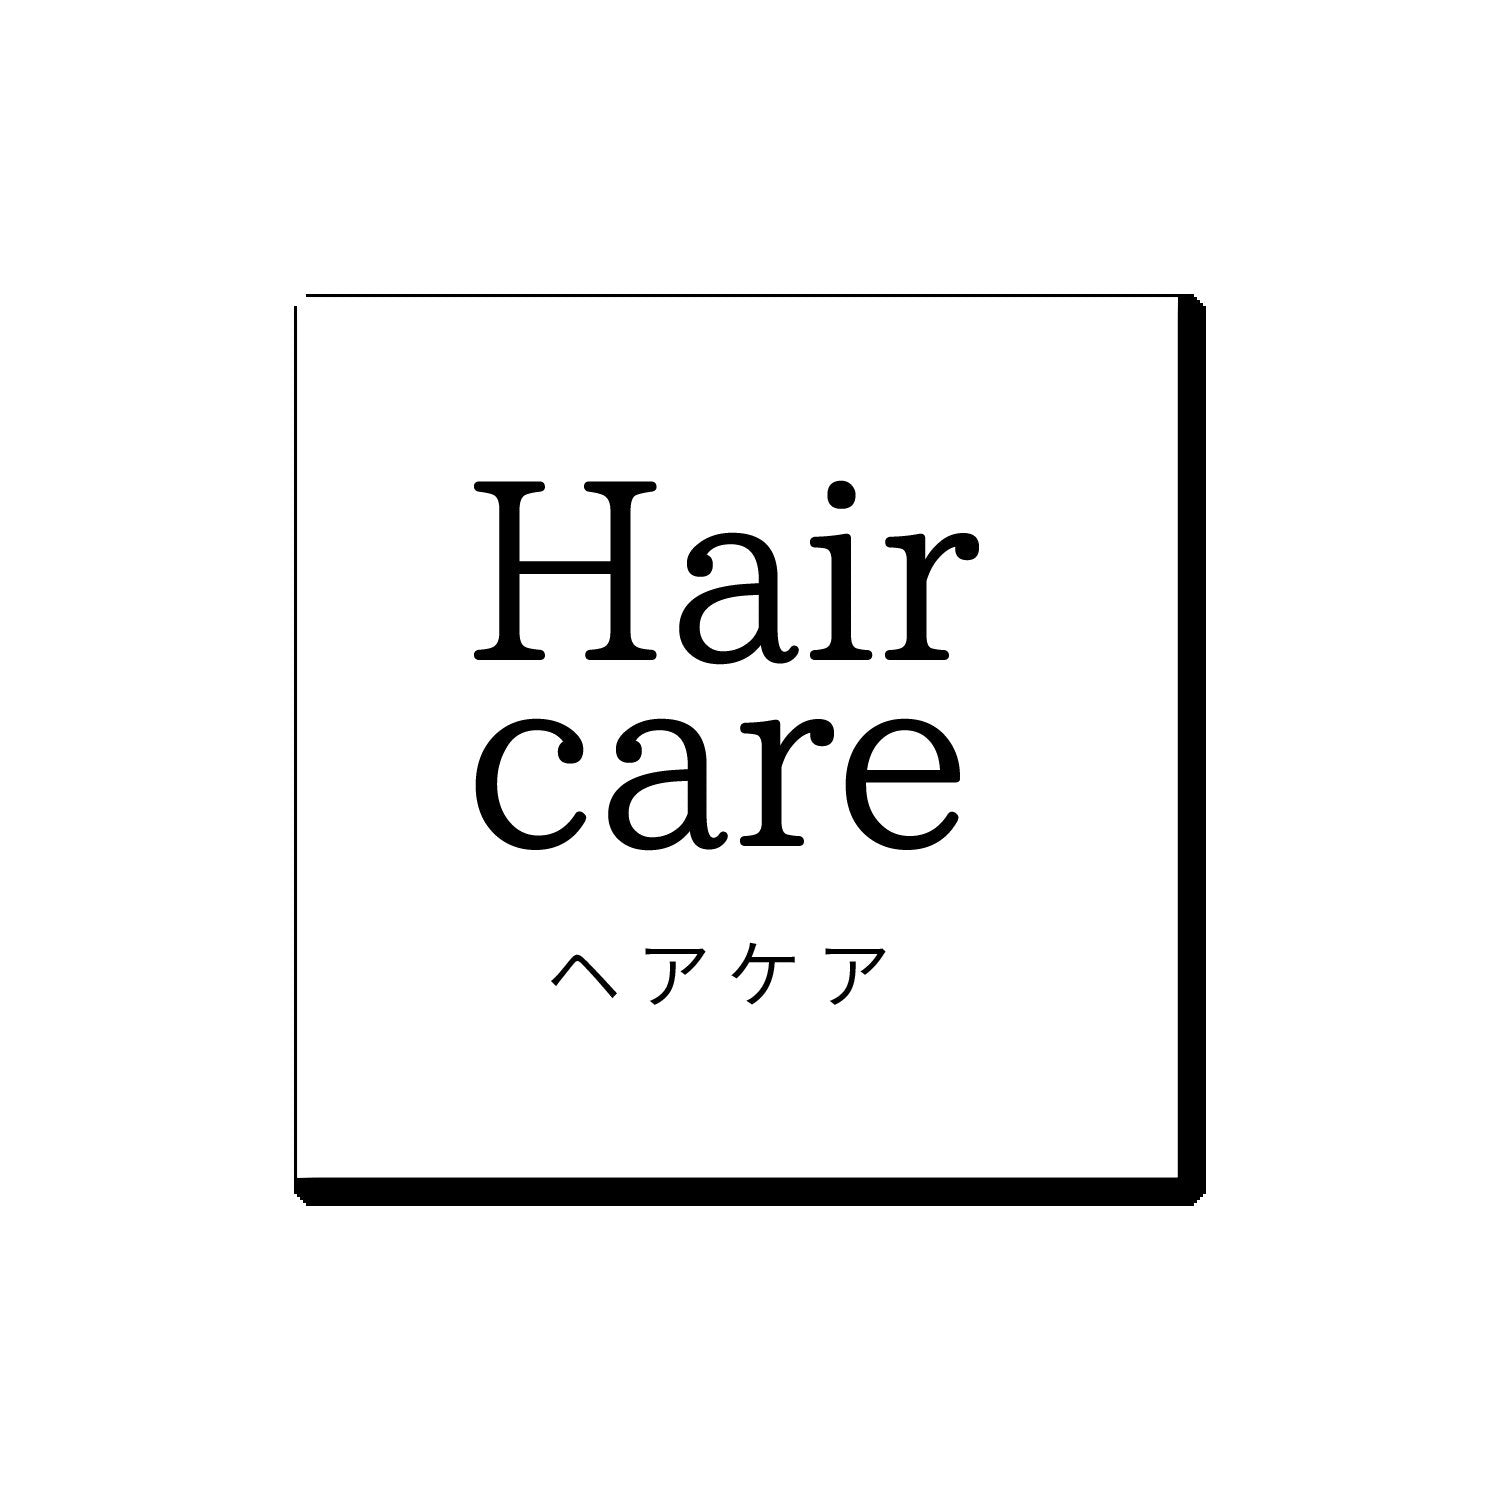 CBD Hair care